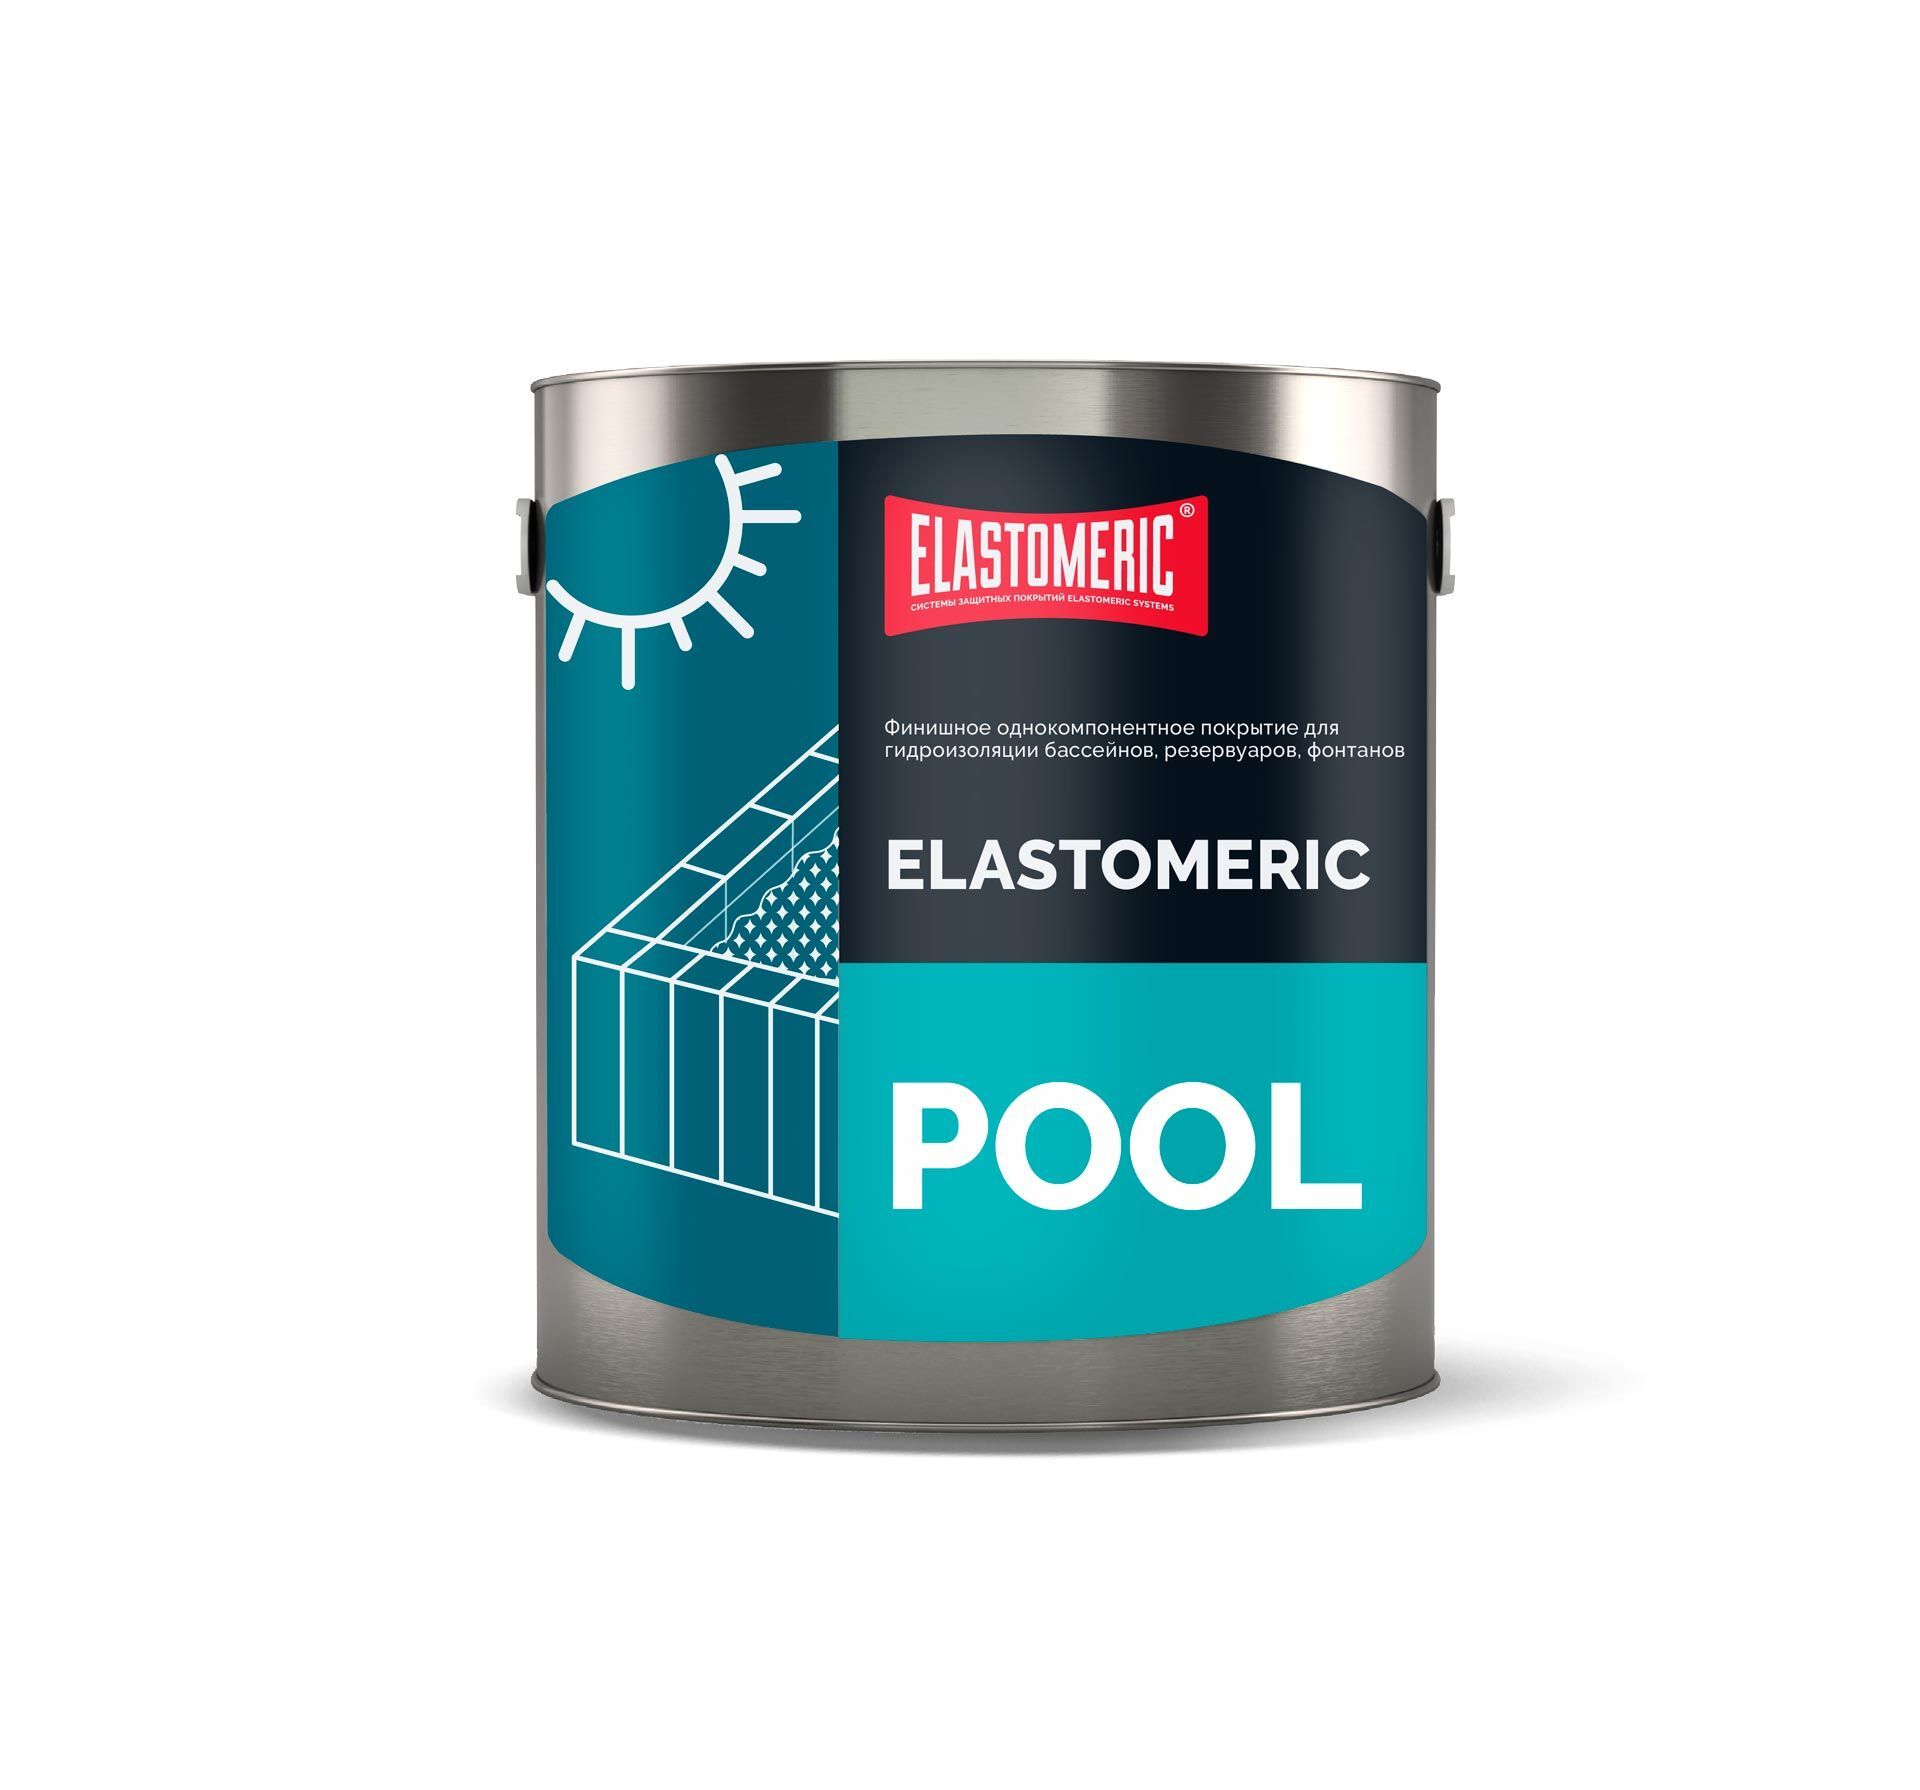 Гидроизоляции бассейнов, резервуаров, фонтанов - Elastomeric Pool 3 кг Голубой